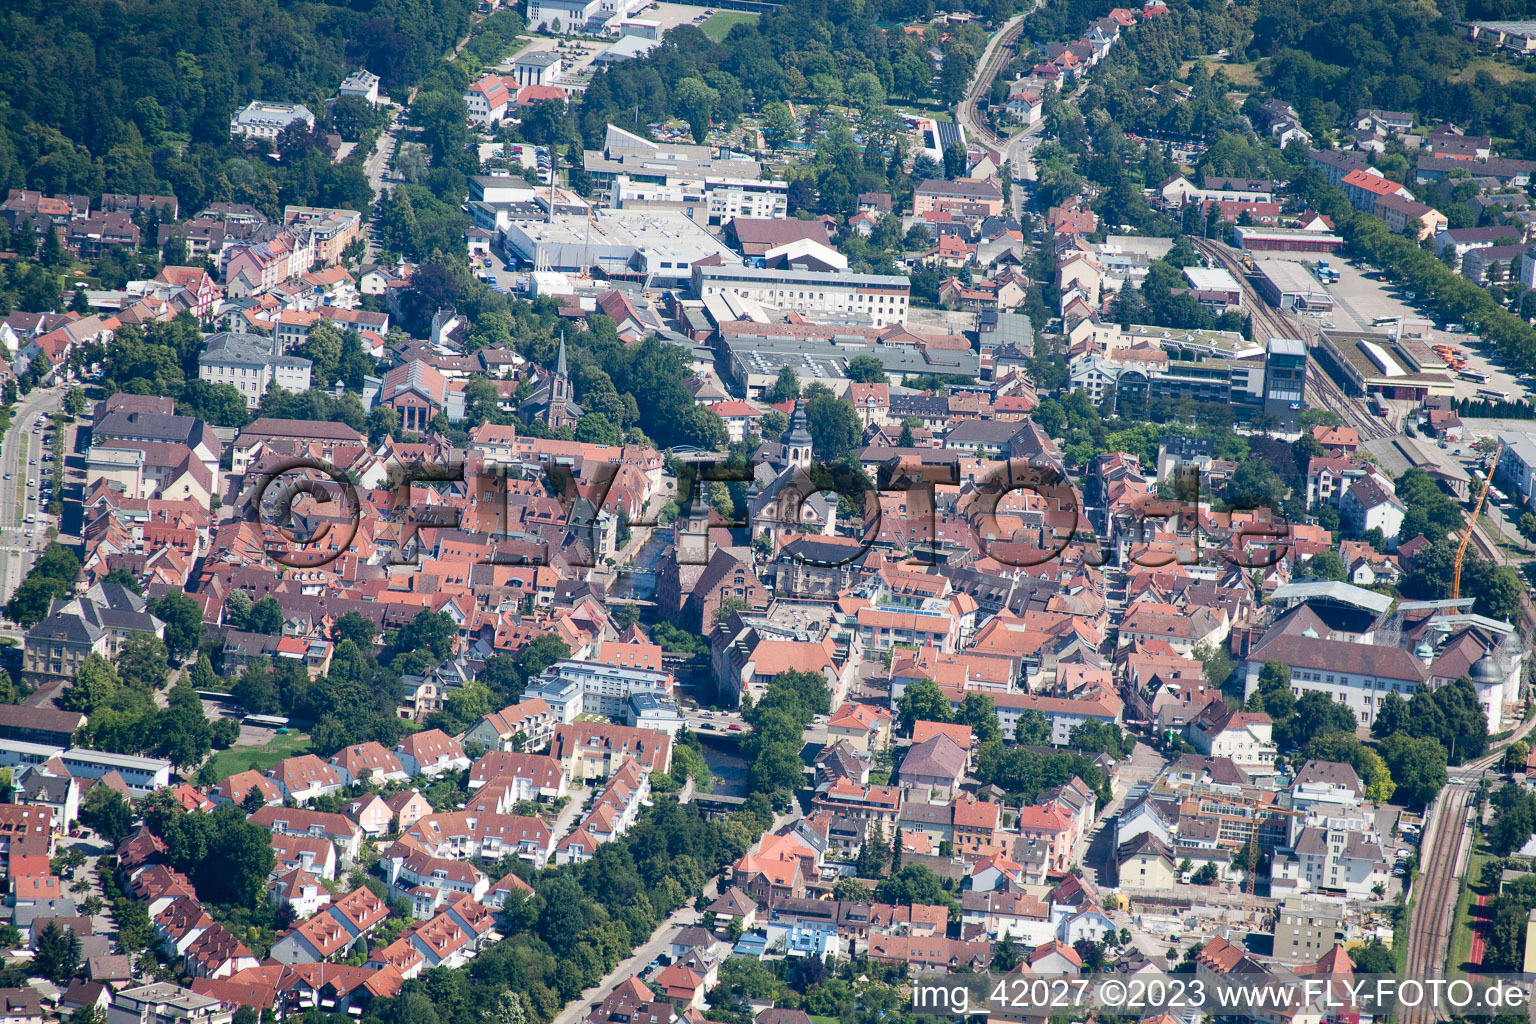 Ettlingen im Bundesland Baden-Württemberg, Deutschland von der Drohne aus gesehen